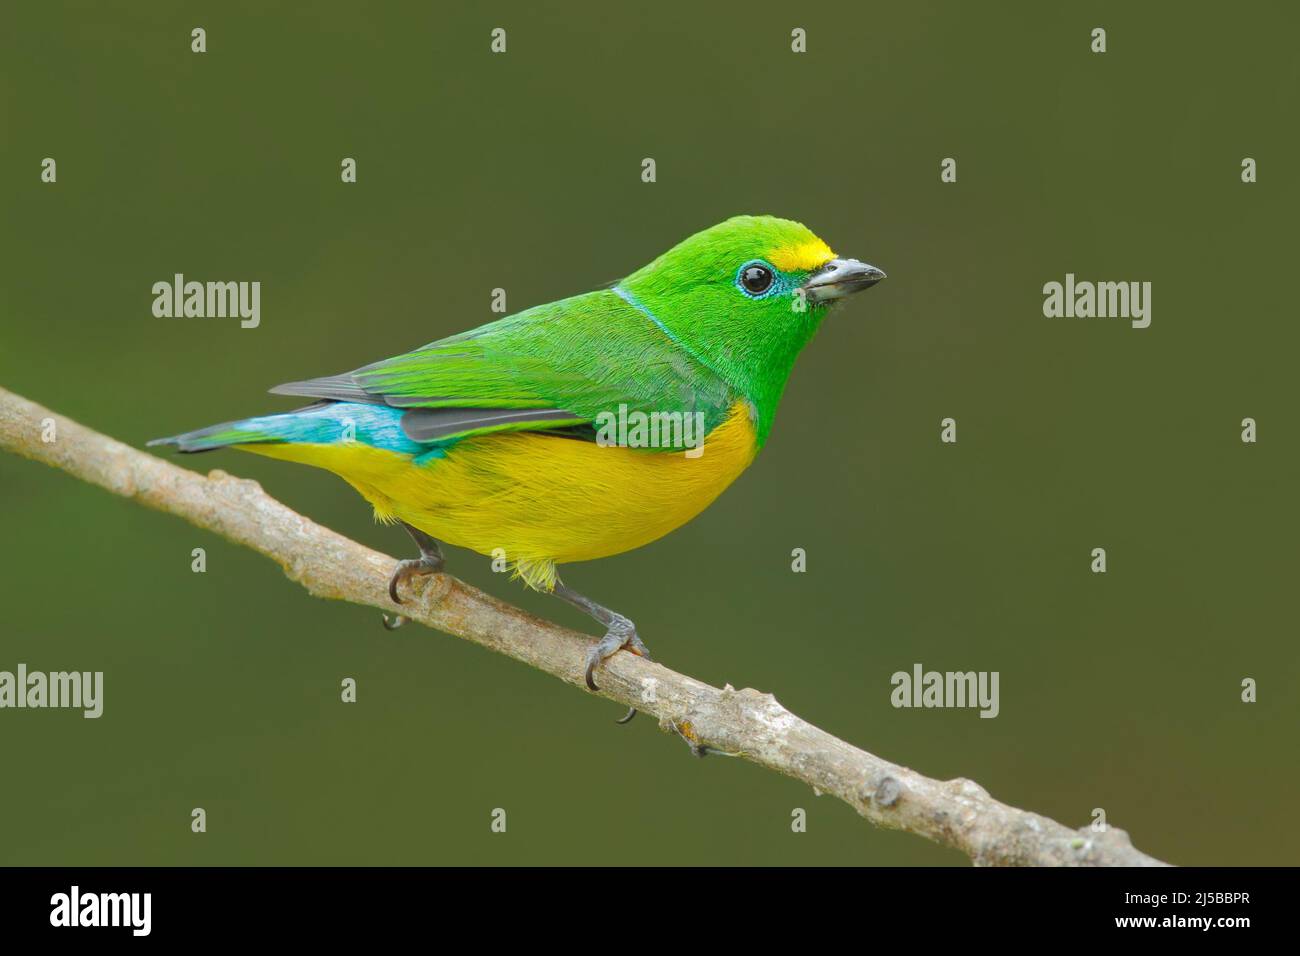 Blaunapter Chlorophonia, Chlorophonia cyanea, exotischer tropischer grüner Singvögel aus Kolumbien. Wildtiere aus Südamerika. Grün und gelb auf der Th Stockfoto